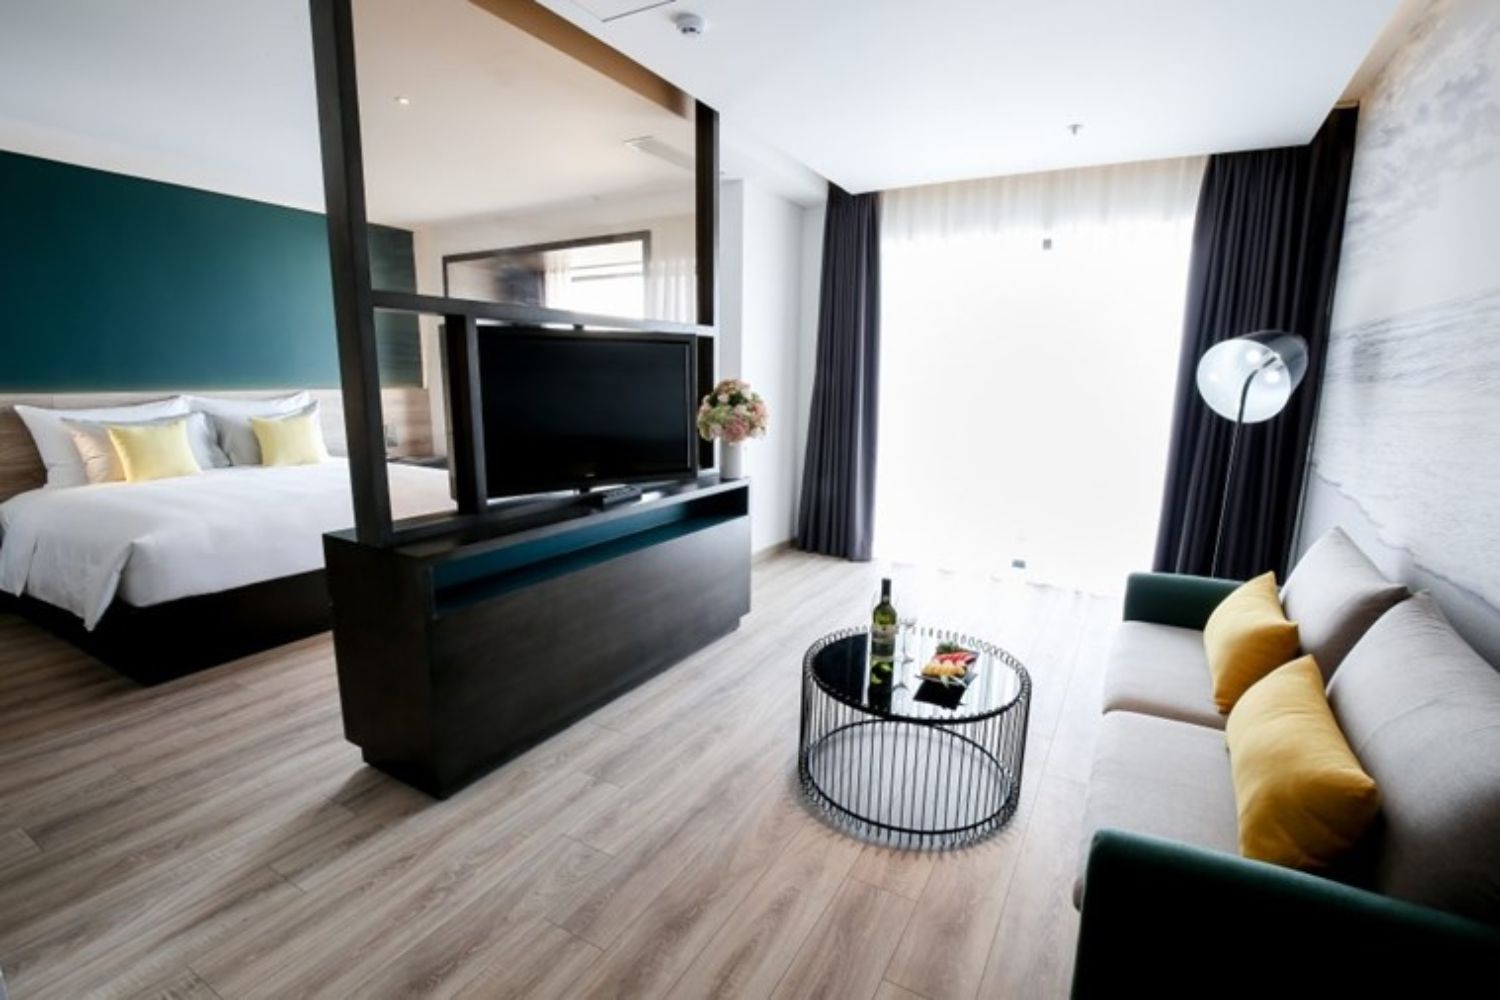 Satya Danang Hotel 4 sao mang vẻ đẹp Châu Âu sang trọng, hiện đại 7